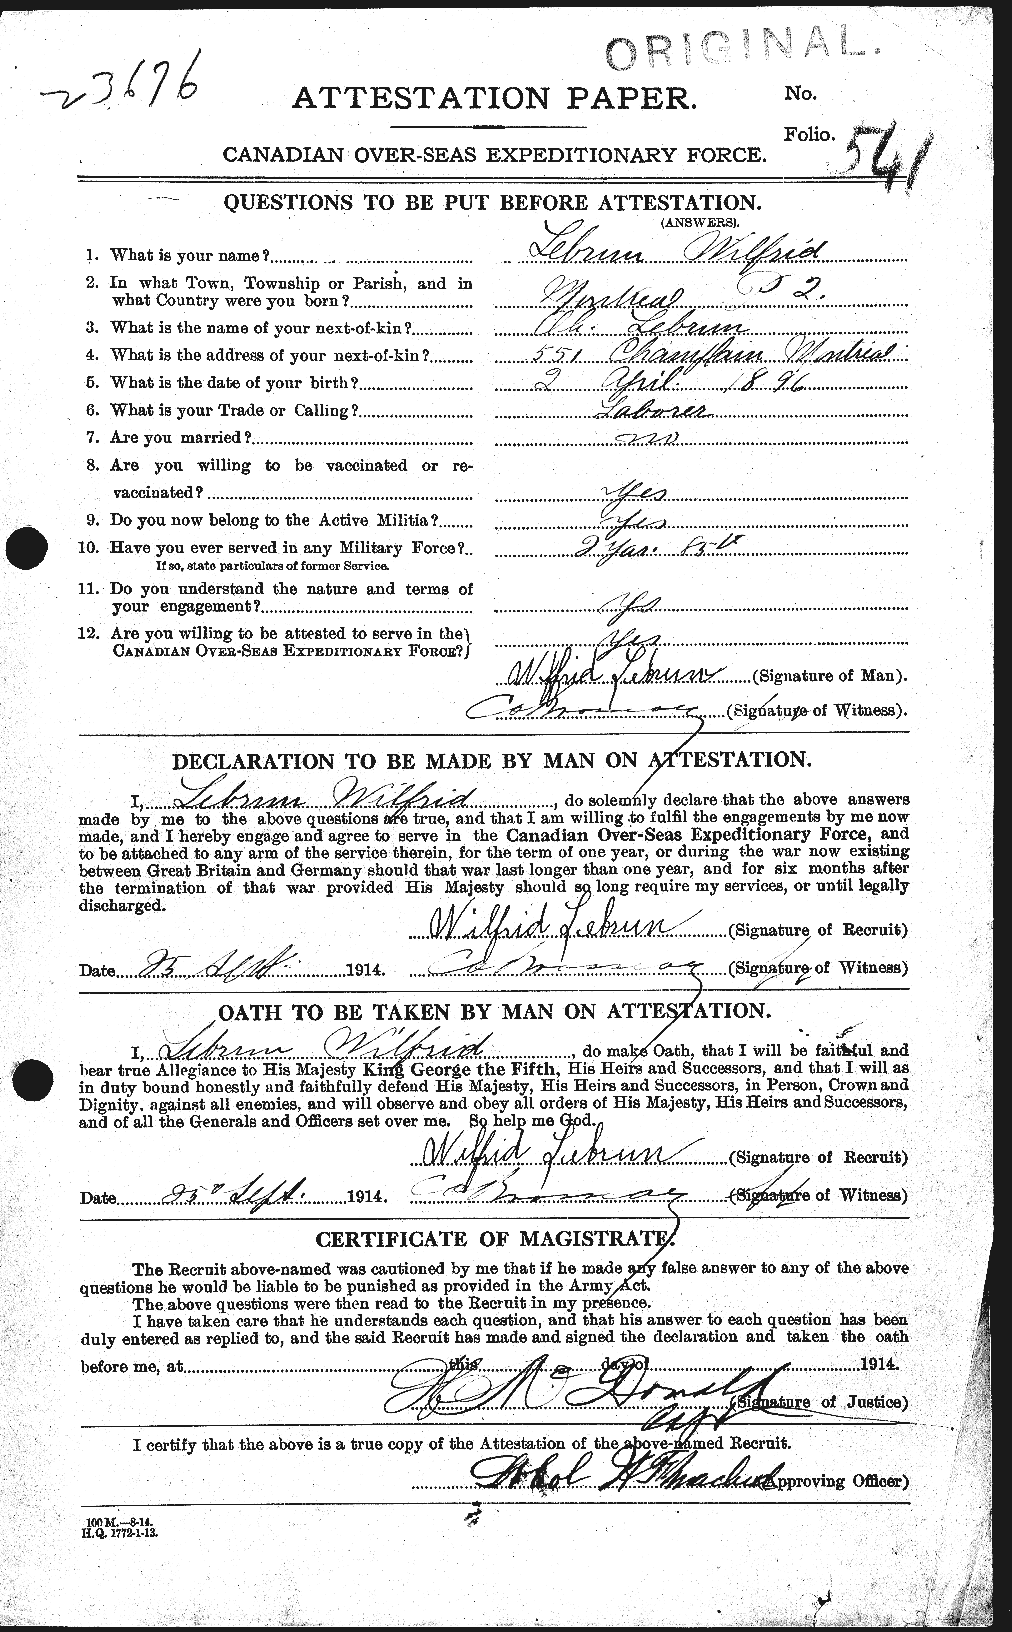 Dossiers du Personnel de la Première Guerre mondiale - CEC 461593a